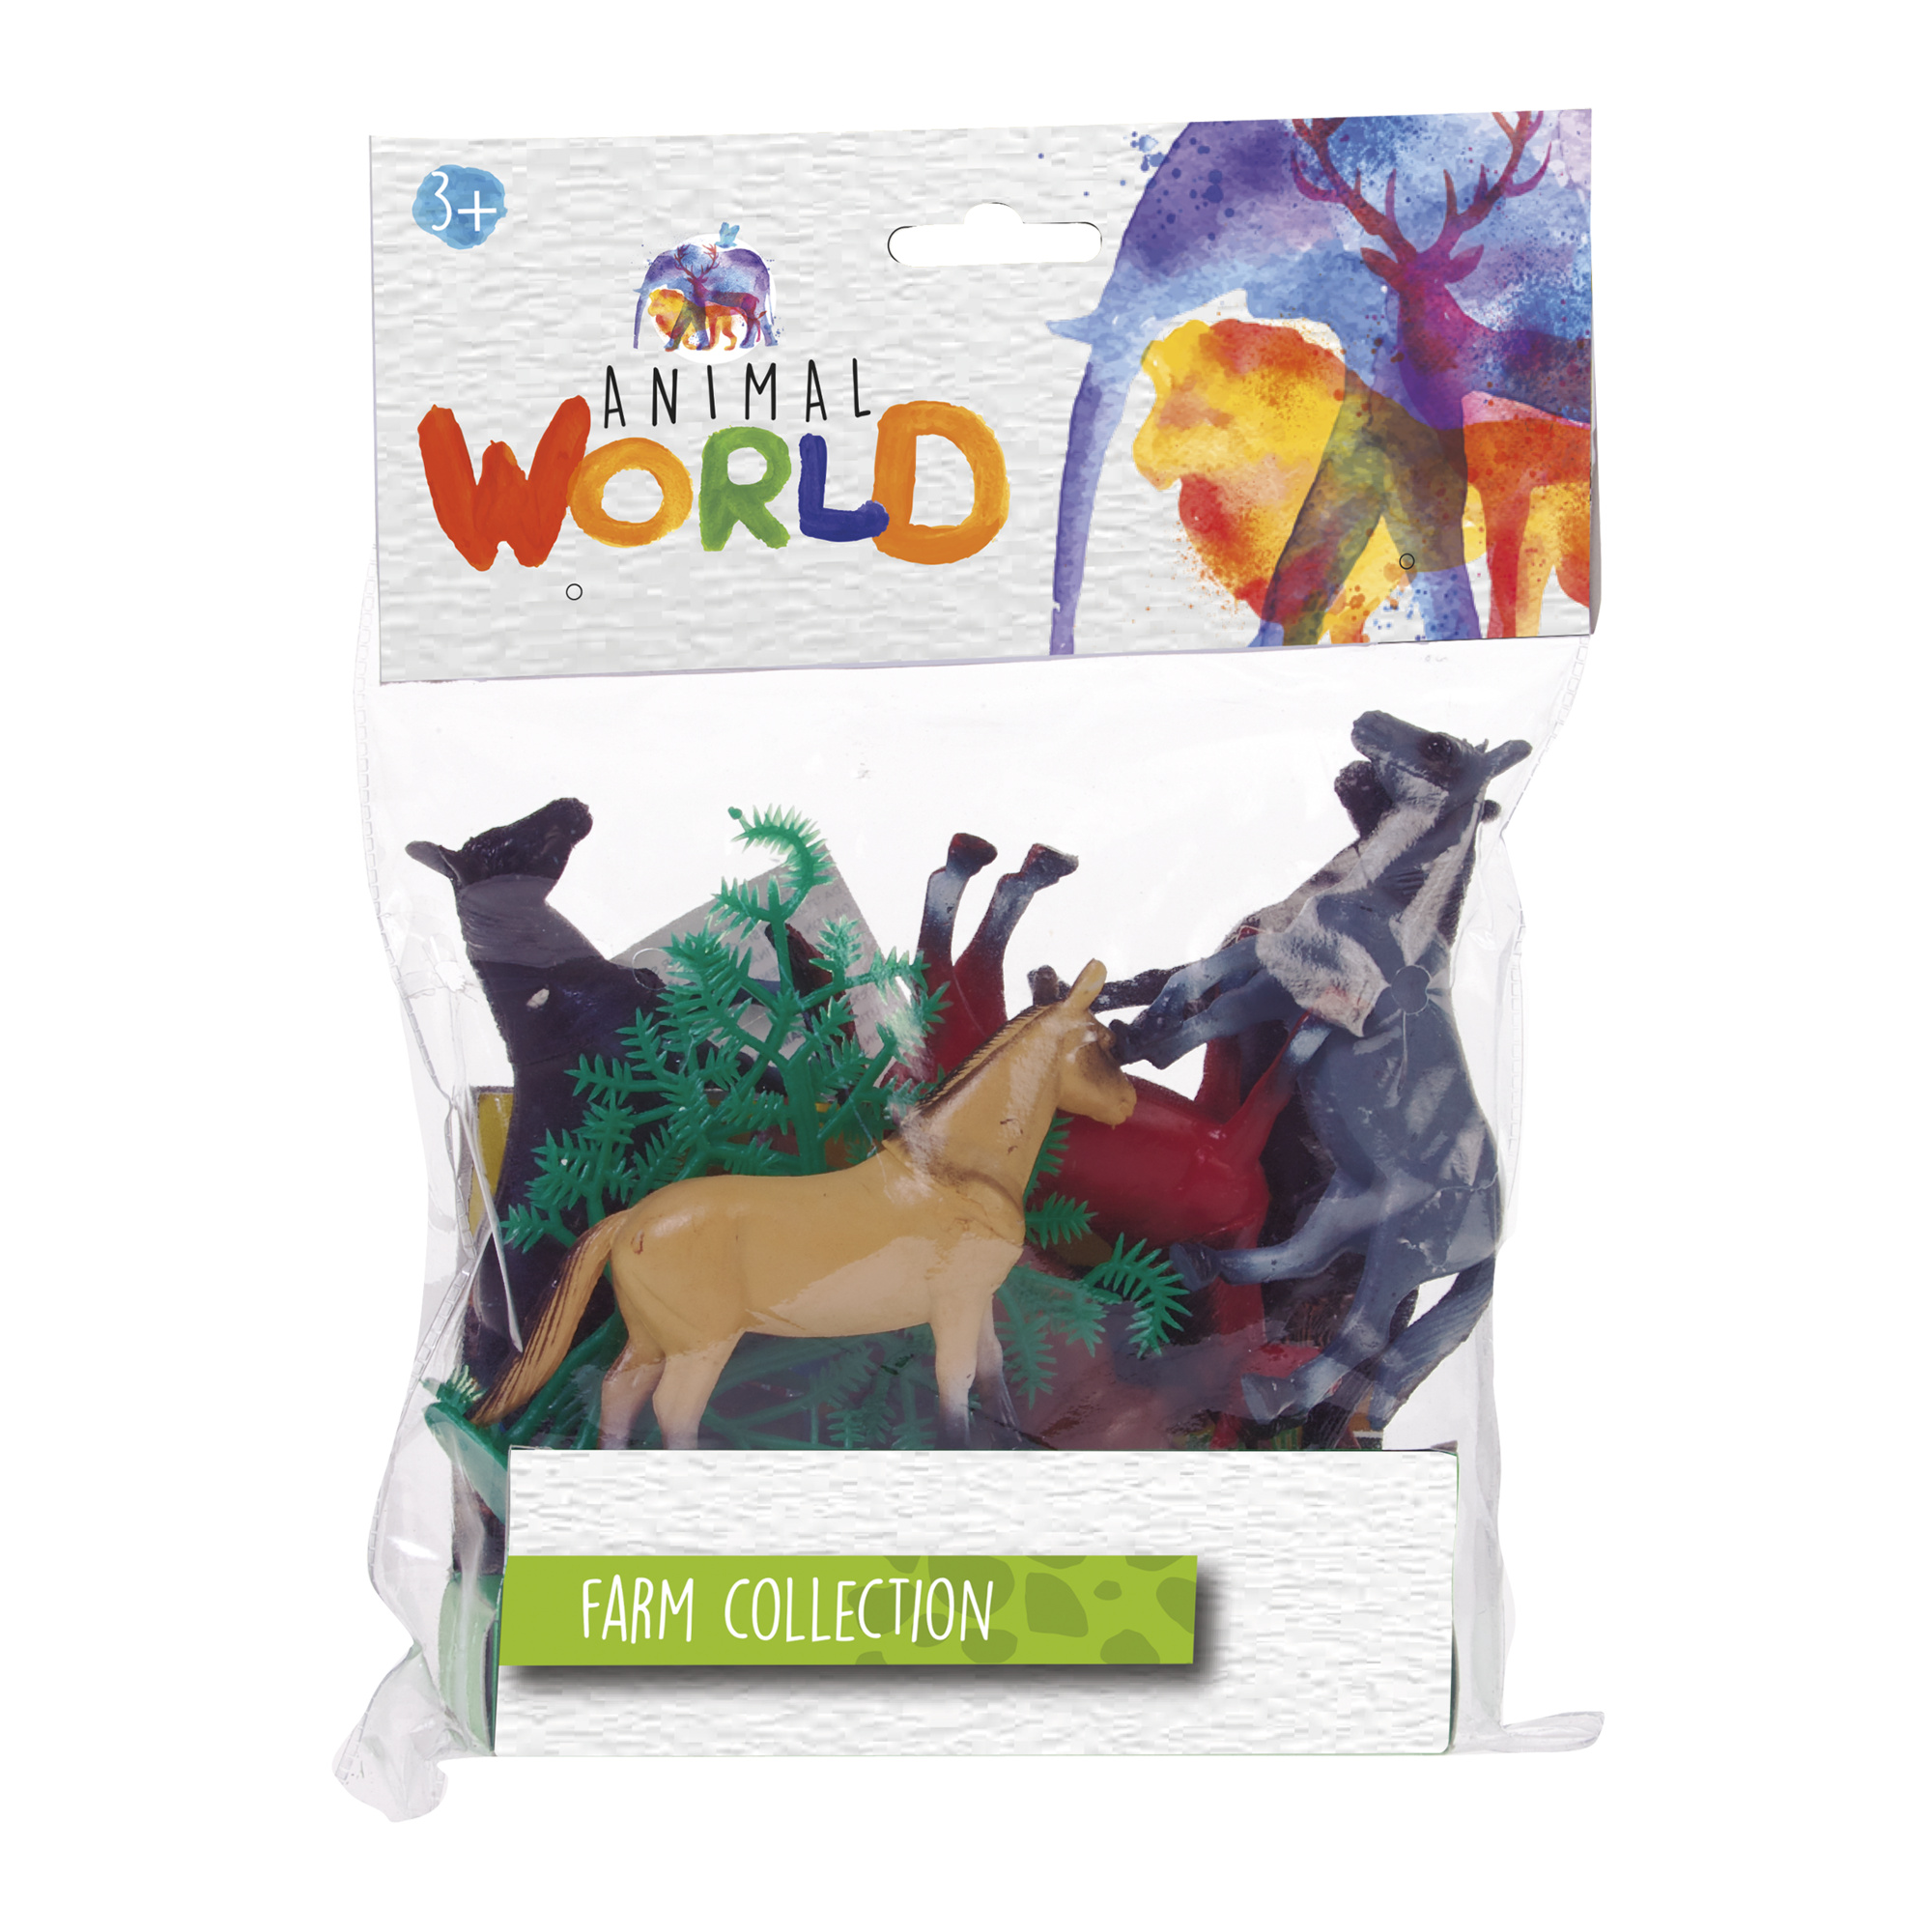 Cavalli / cani e gatti - farm collection - animal world - Animal world